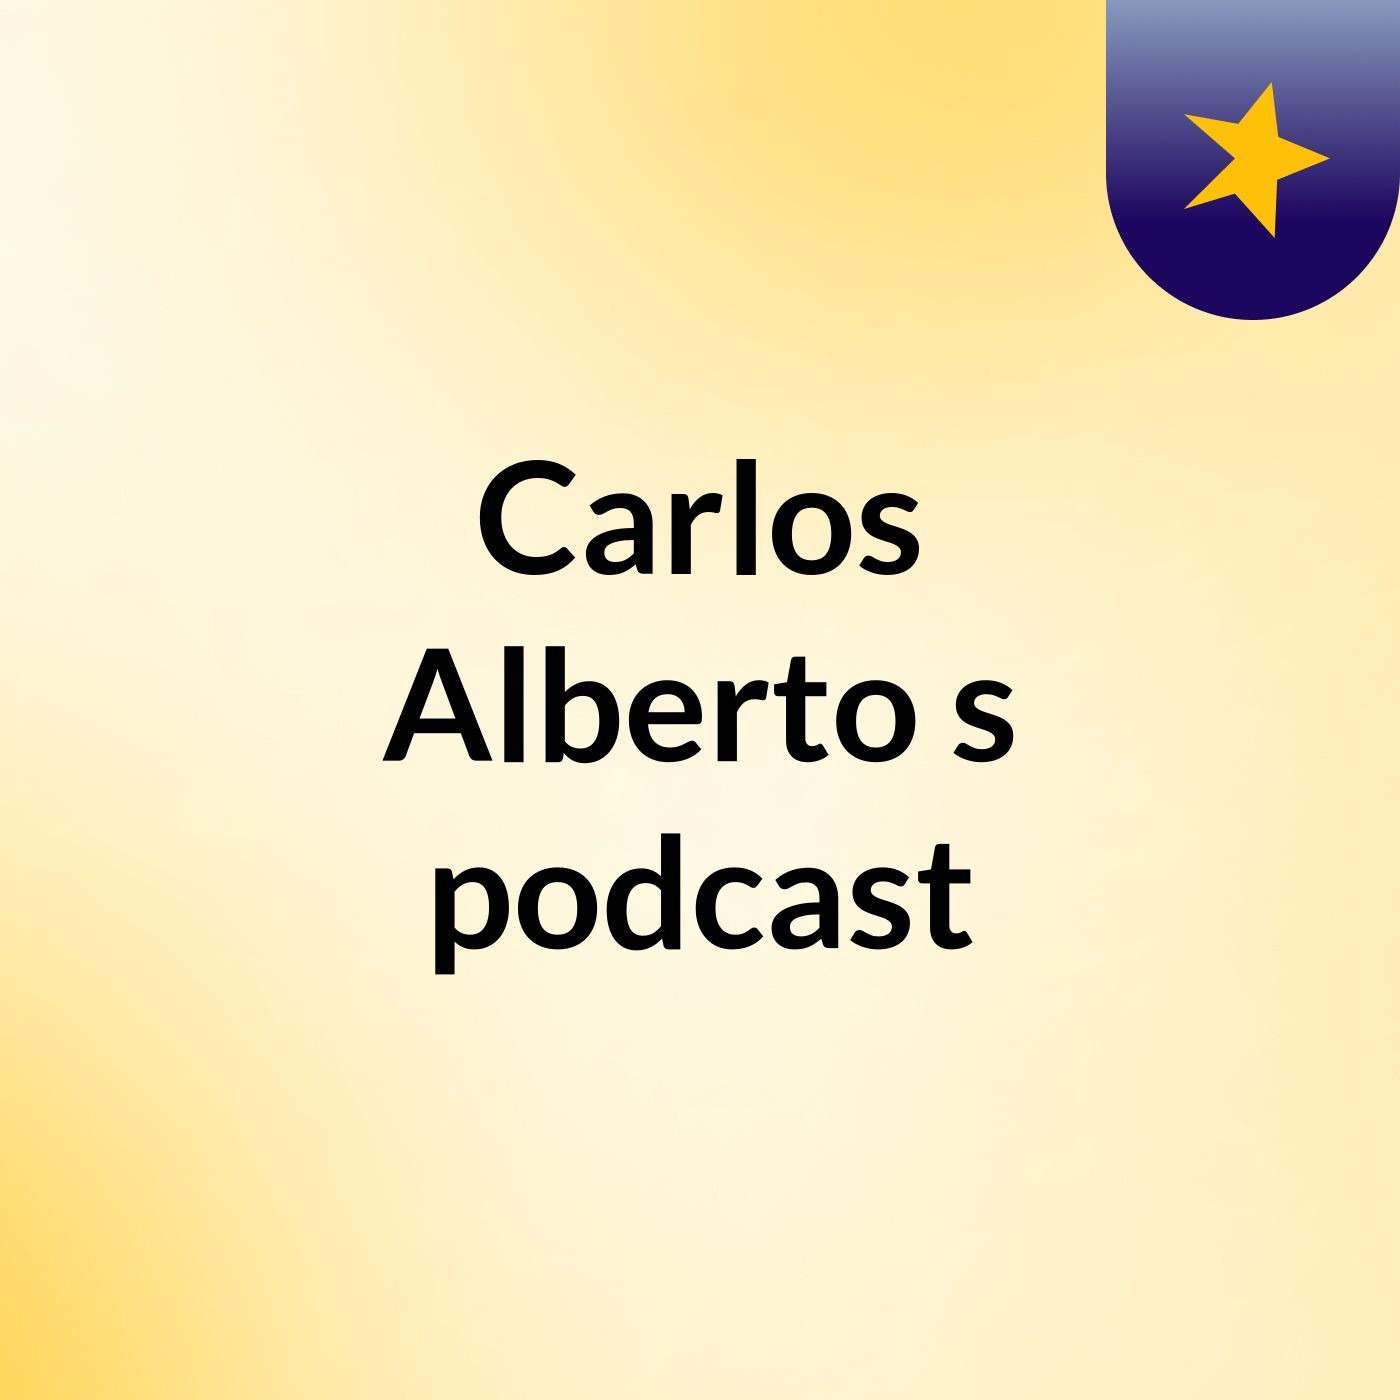 Carlos Alberto's podcast